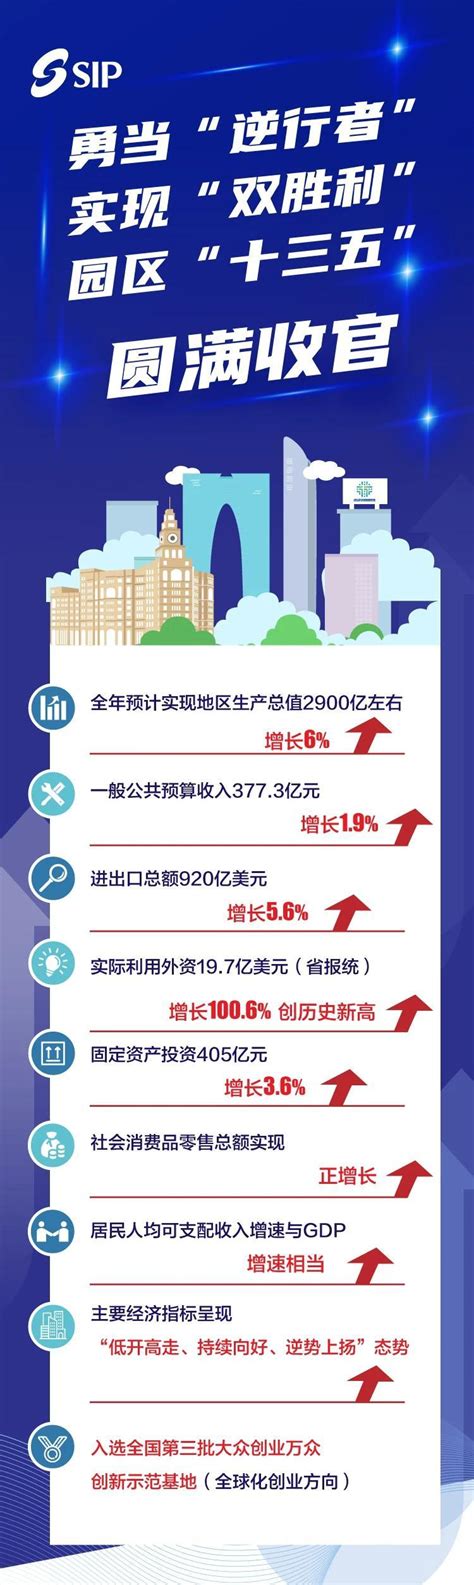 GDP上涨6%!一图读懂苏州工业园区2020成绩单! - 经济新闻 - 中国网•东海资讯